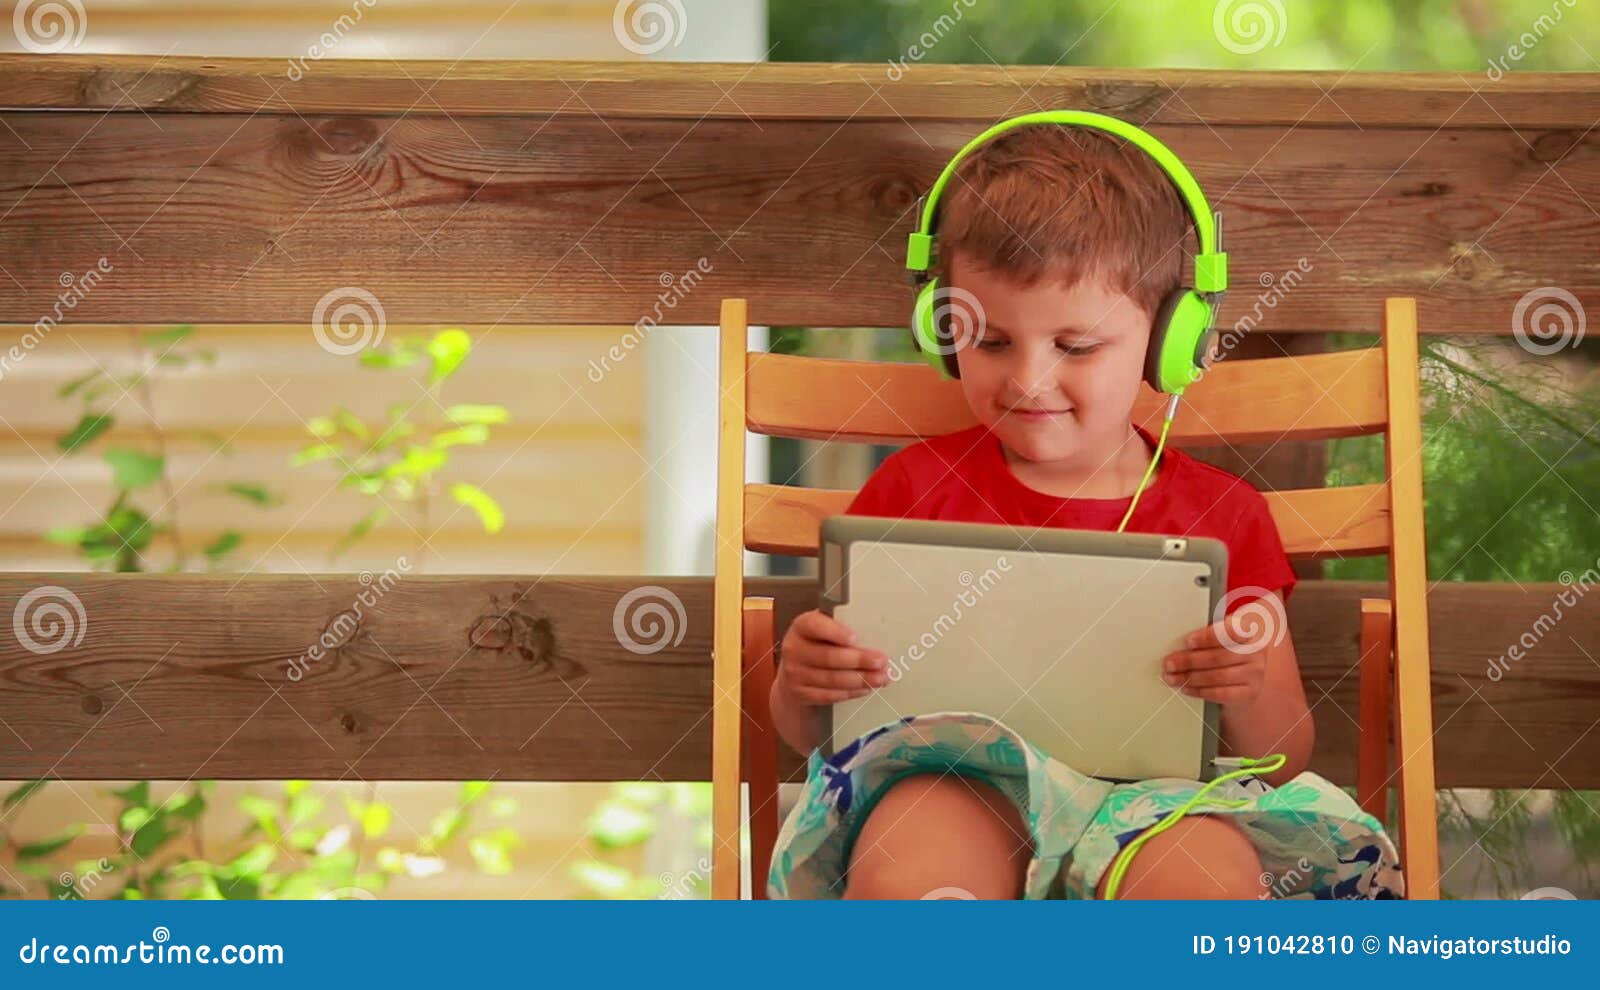 戴耳机的小男孩读书-蓝牛仔影像-中国原创广告影像素材